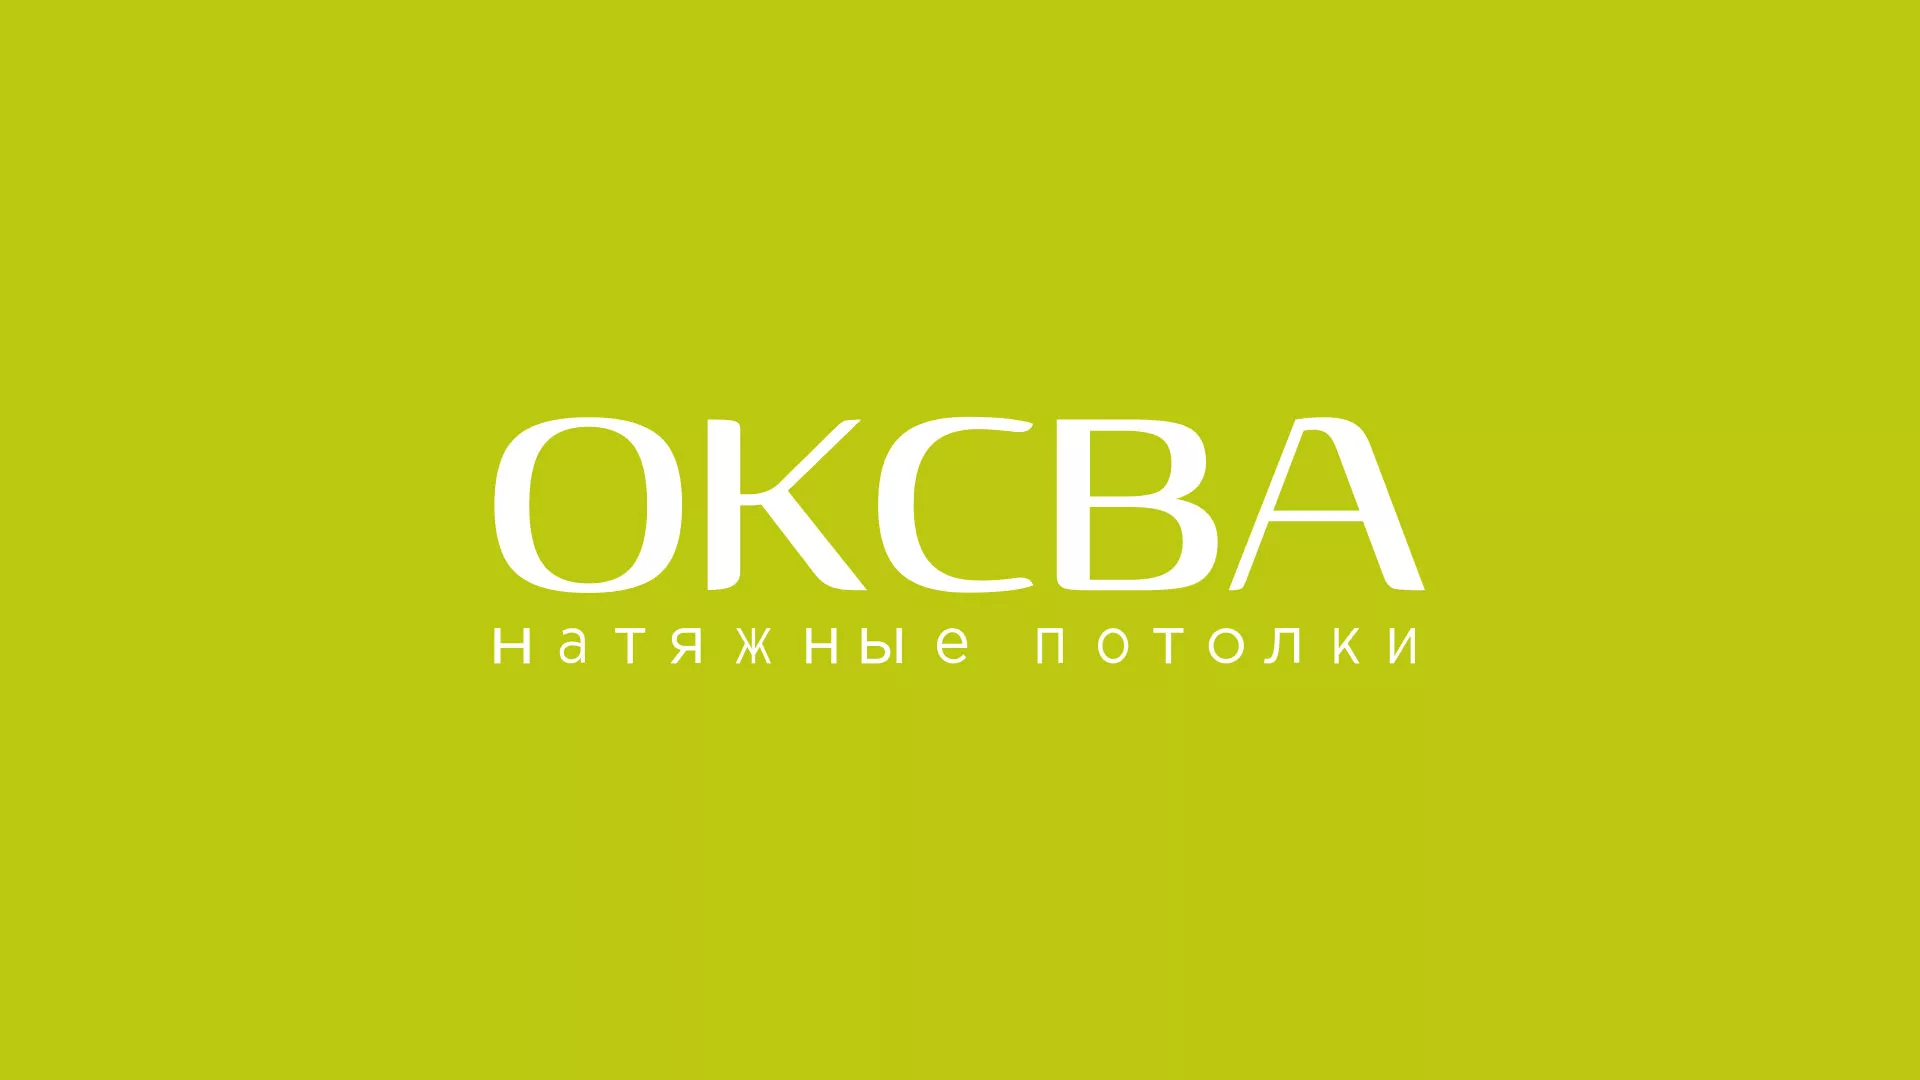 Создание сайта по продаже натяжных потолков для компании «ОКСВА» в Усть-Лабинске